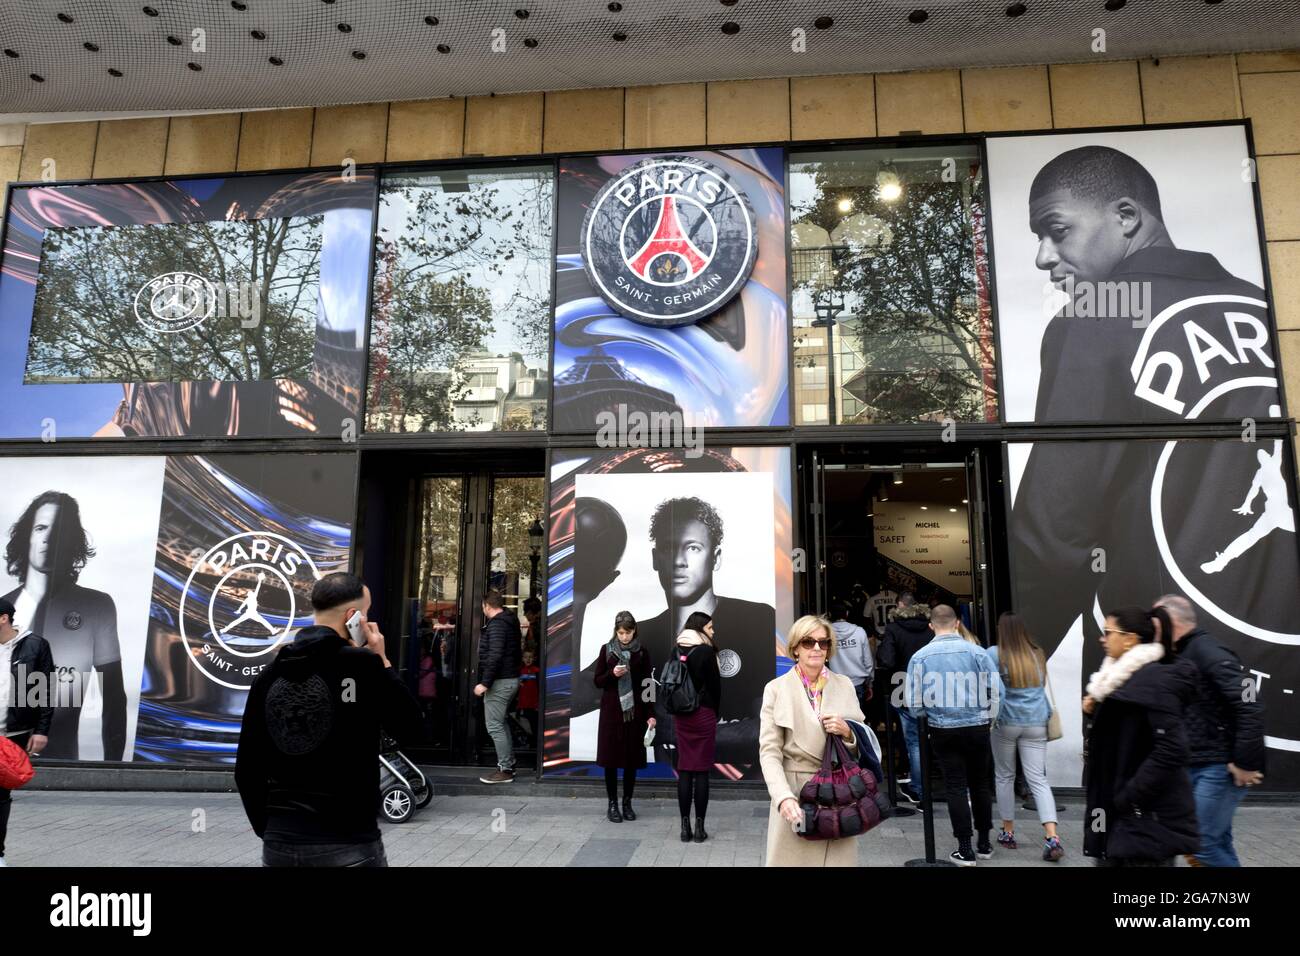 Boutique officielle de l'équipe de football Paris Saint Germain sur les champs Elysées, à Paris Banque D'Images